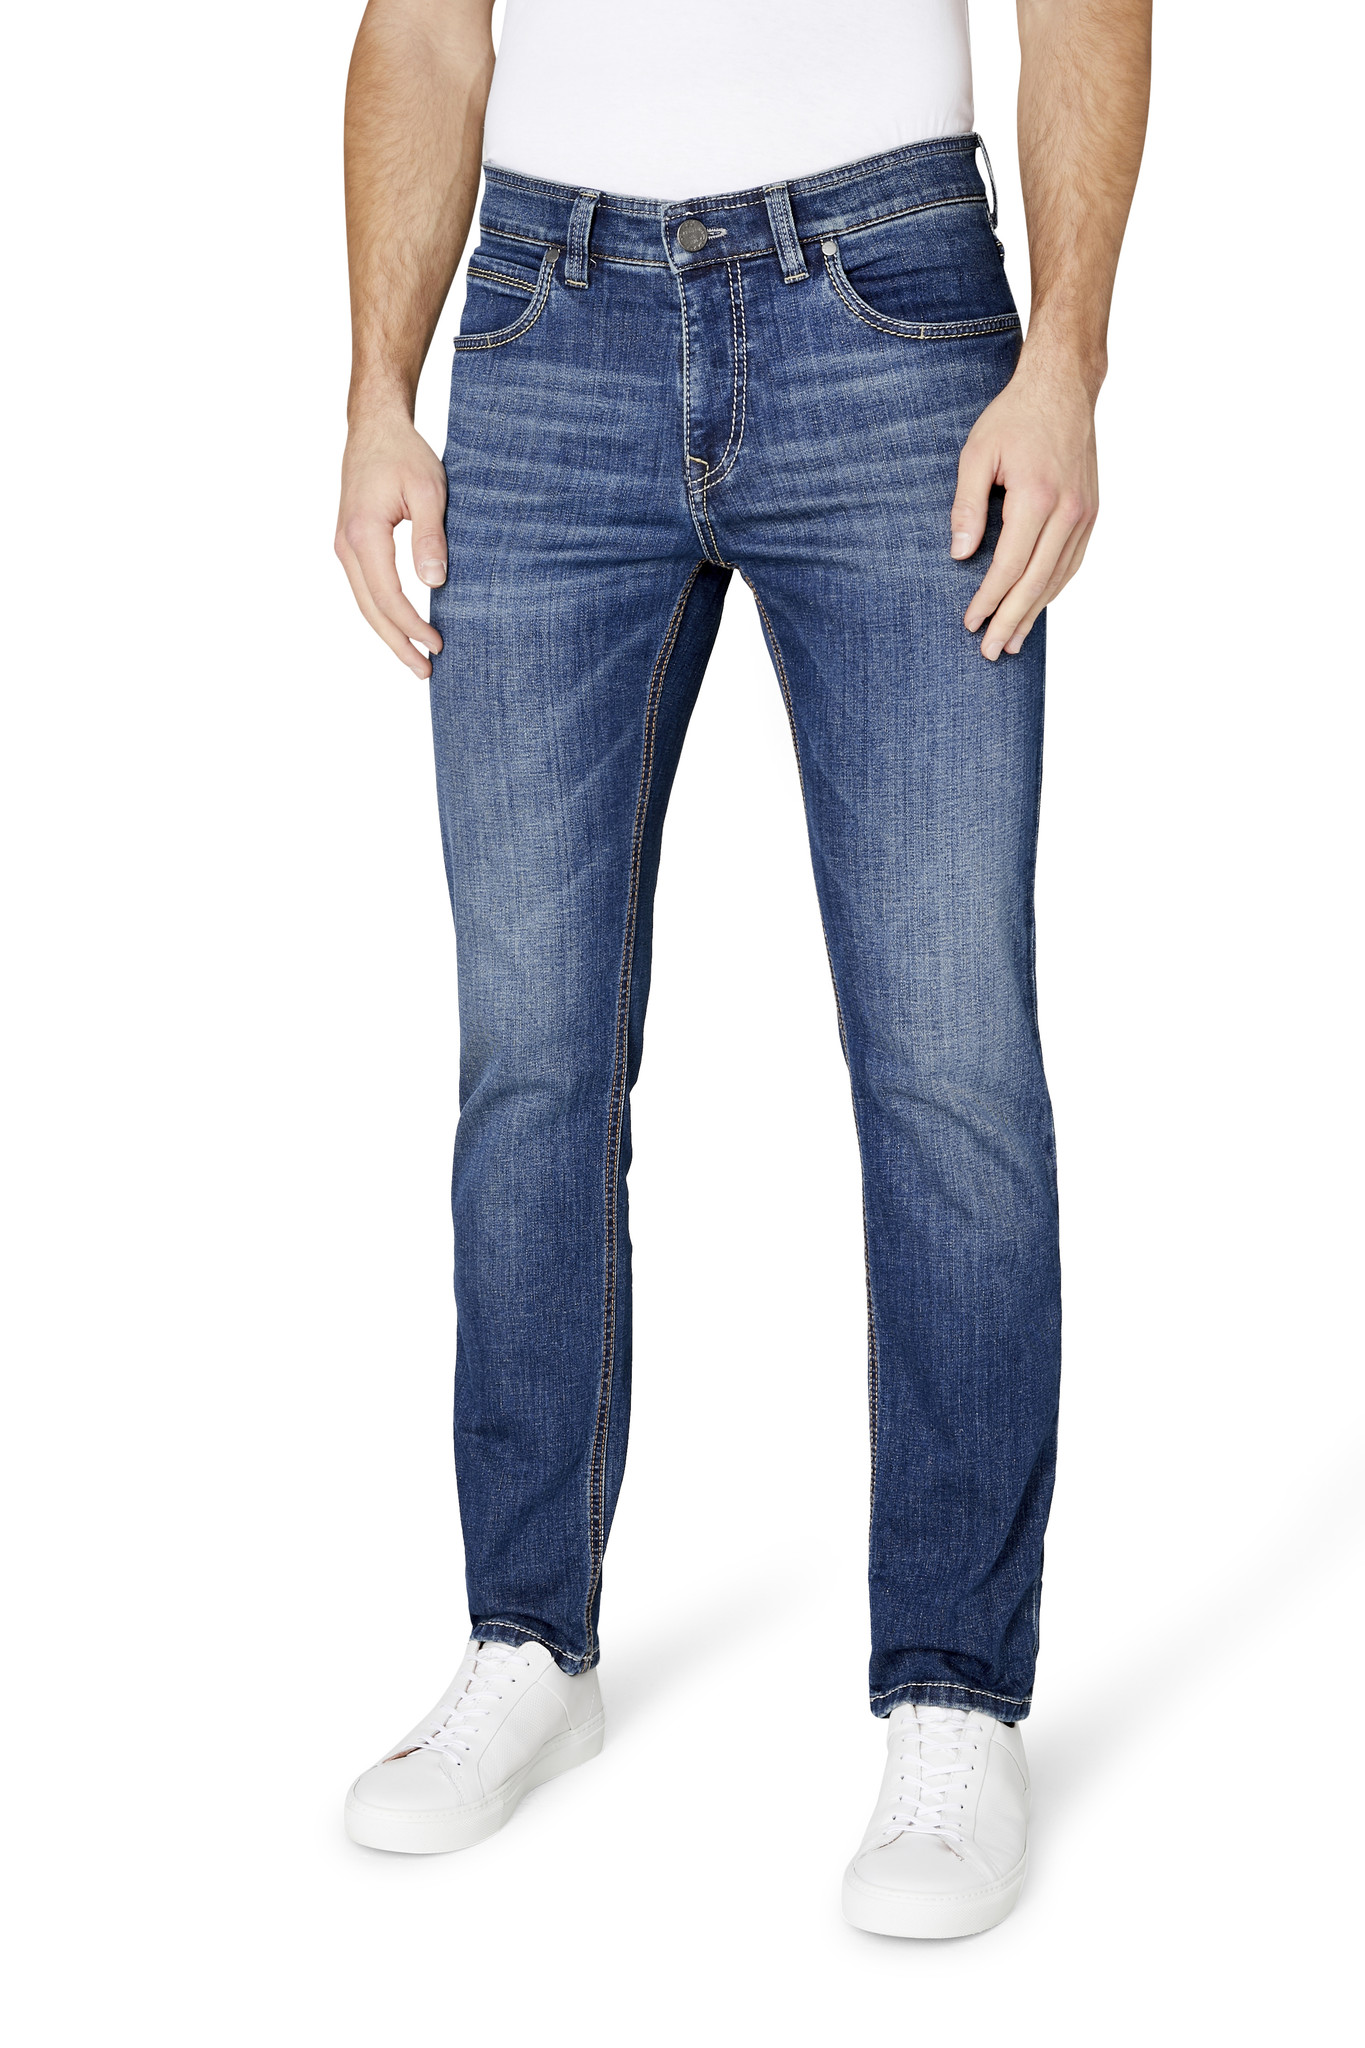 Zuinig Geaccepteerd Plenaire sessie Gardeur Batu-2 modern fit jeans lichtblauw 71001-067 | Tim Menswear - Tim  Menswear